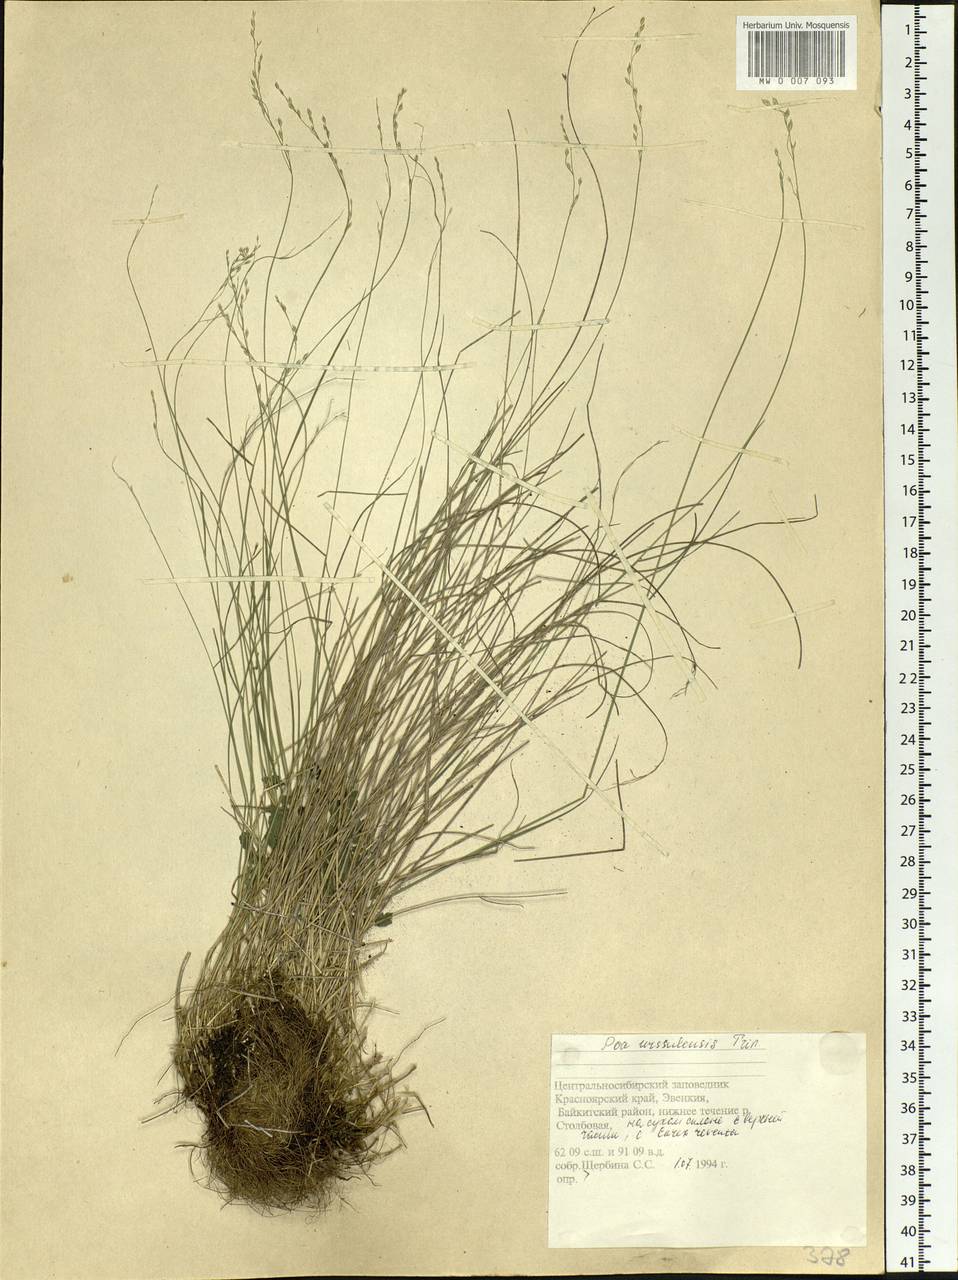 Poa urssulensis Trin., Siberia, Central Siberia (S3) (Russia)